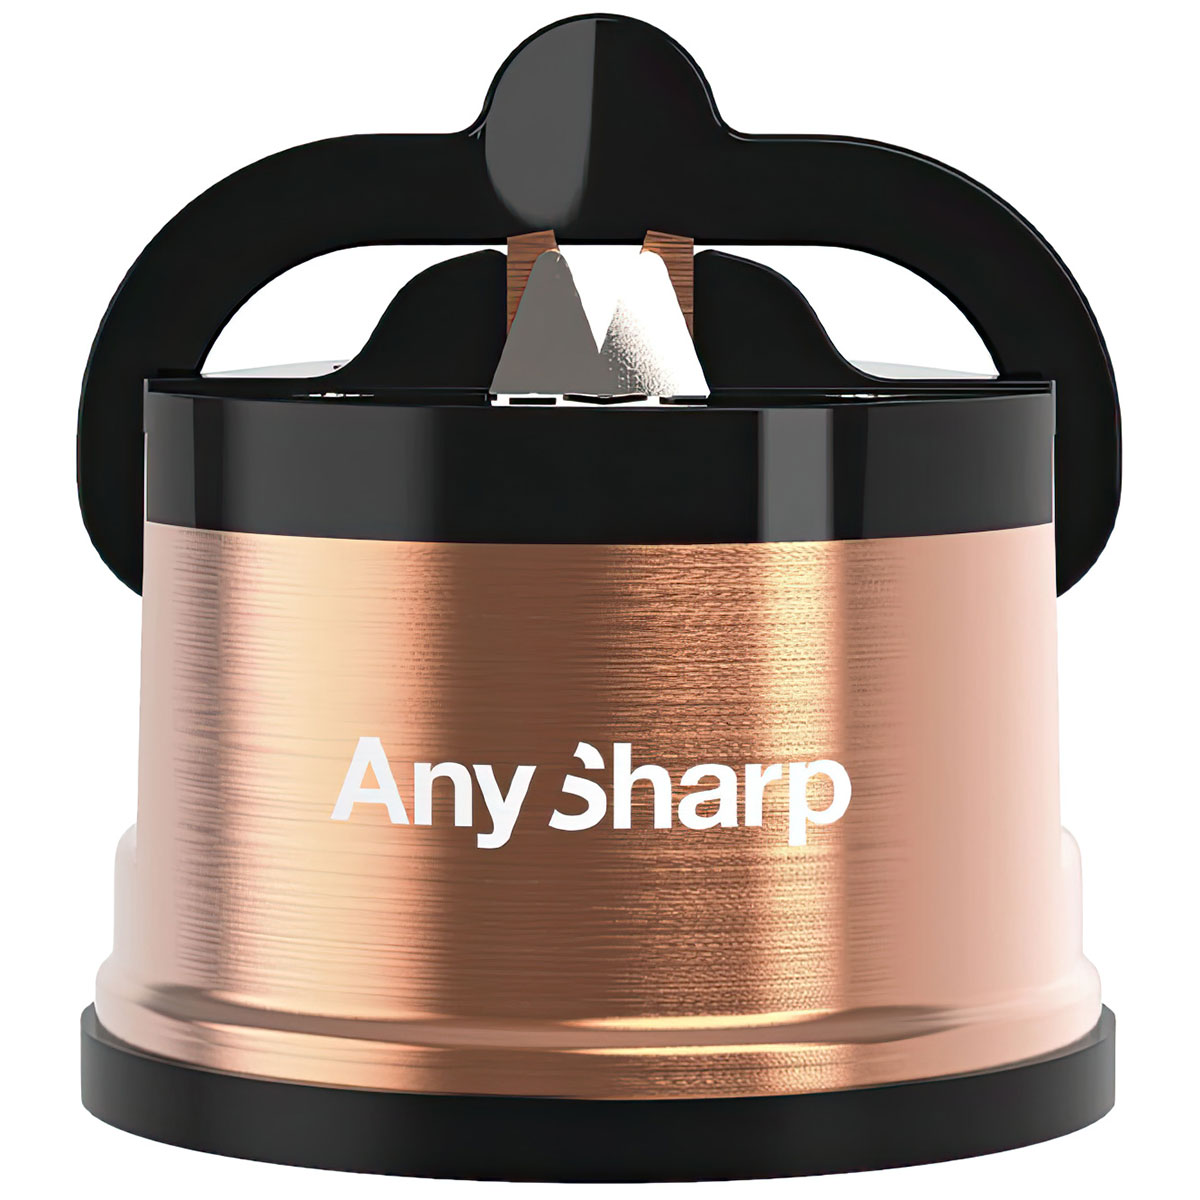 Точилка для ножей AnySharp PRO EXCEL copper точилка lansky керамическая под 4 угла заточки 17 20 25 30 градусов